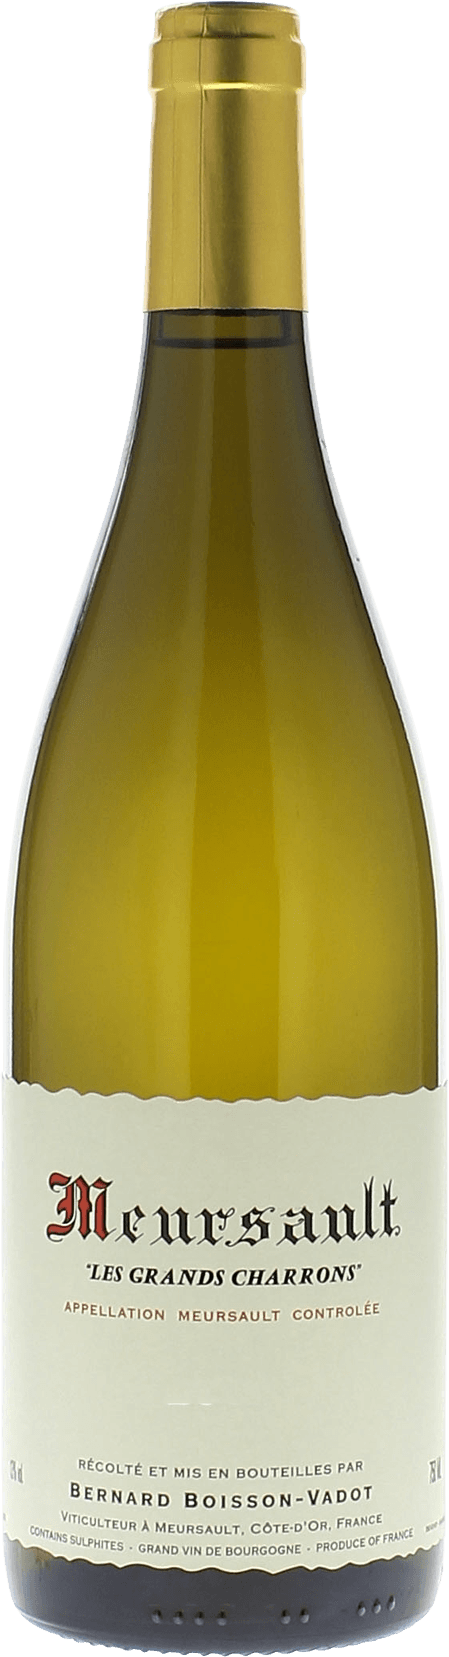 Meursault grands charrons 2016  BOISSON VADOT Bernard, Bourgogne blanc